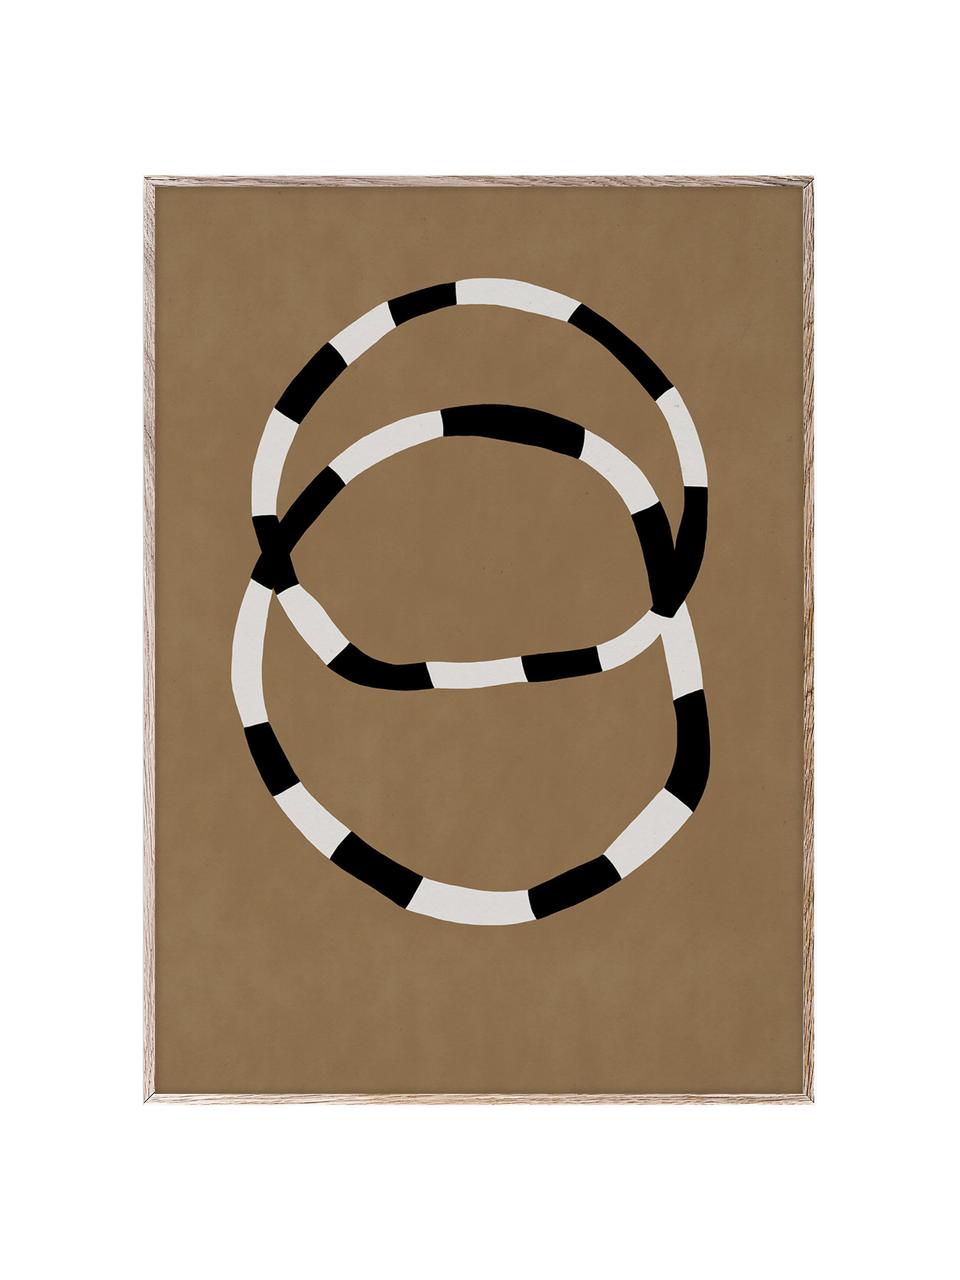 Plakát Bracelets, 210g matný papír Hahnemühle, digitální tisk s 10 barvami odolnými vůči UV záření, Terakotová, tlumeně bílá, černá, Š 50 cm, V 70 cm